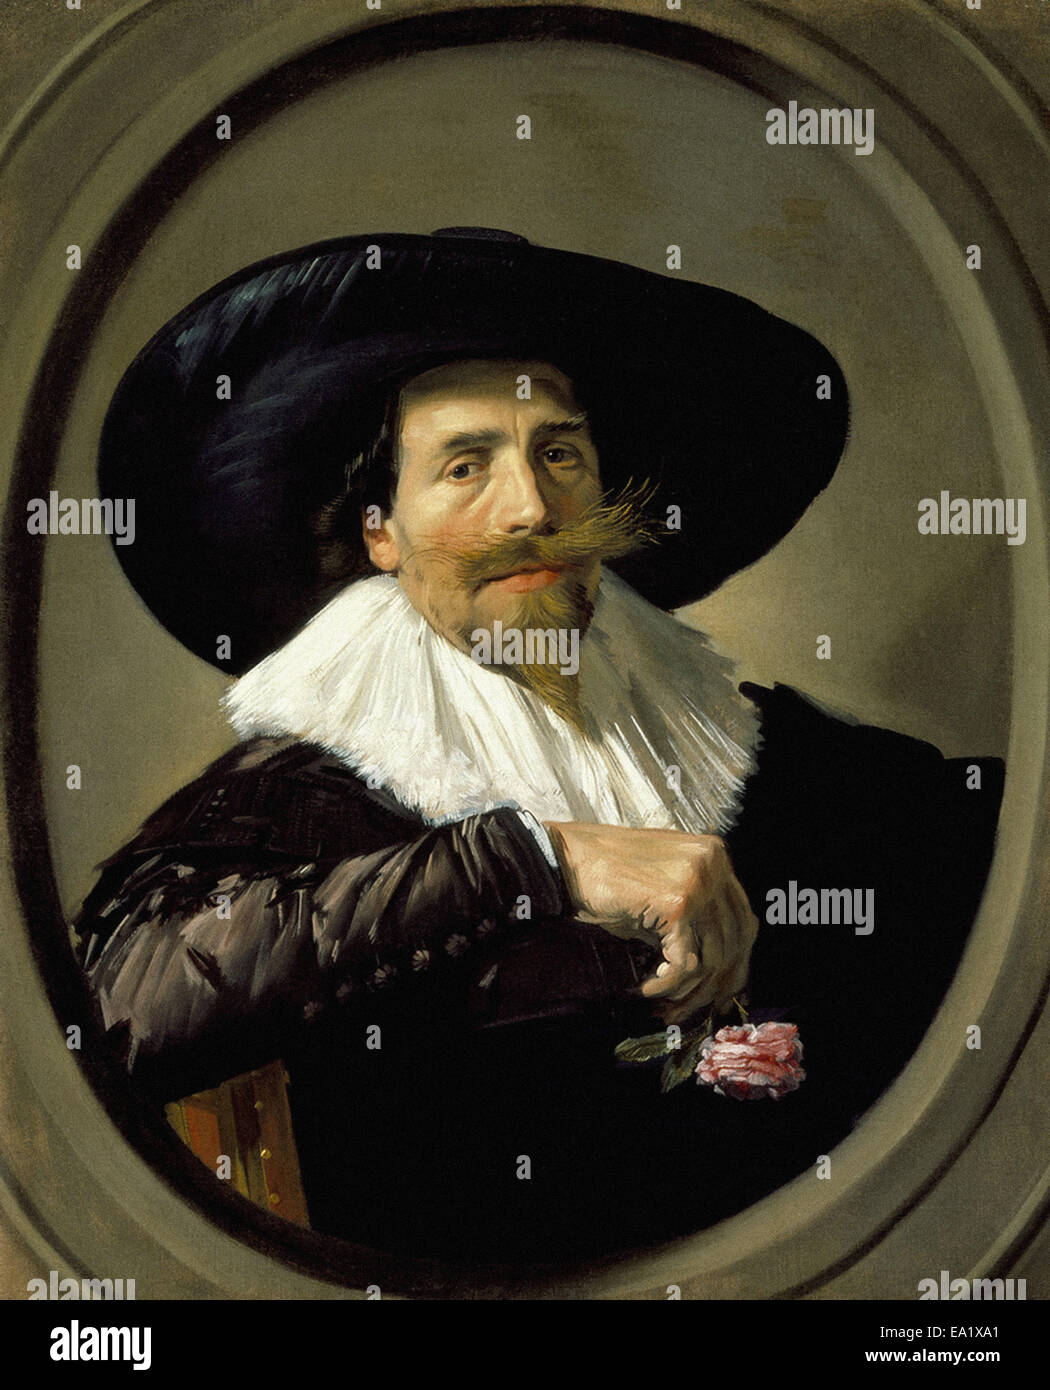 Frans Hals  Portrait of a Man Stock Photo